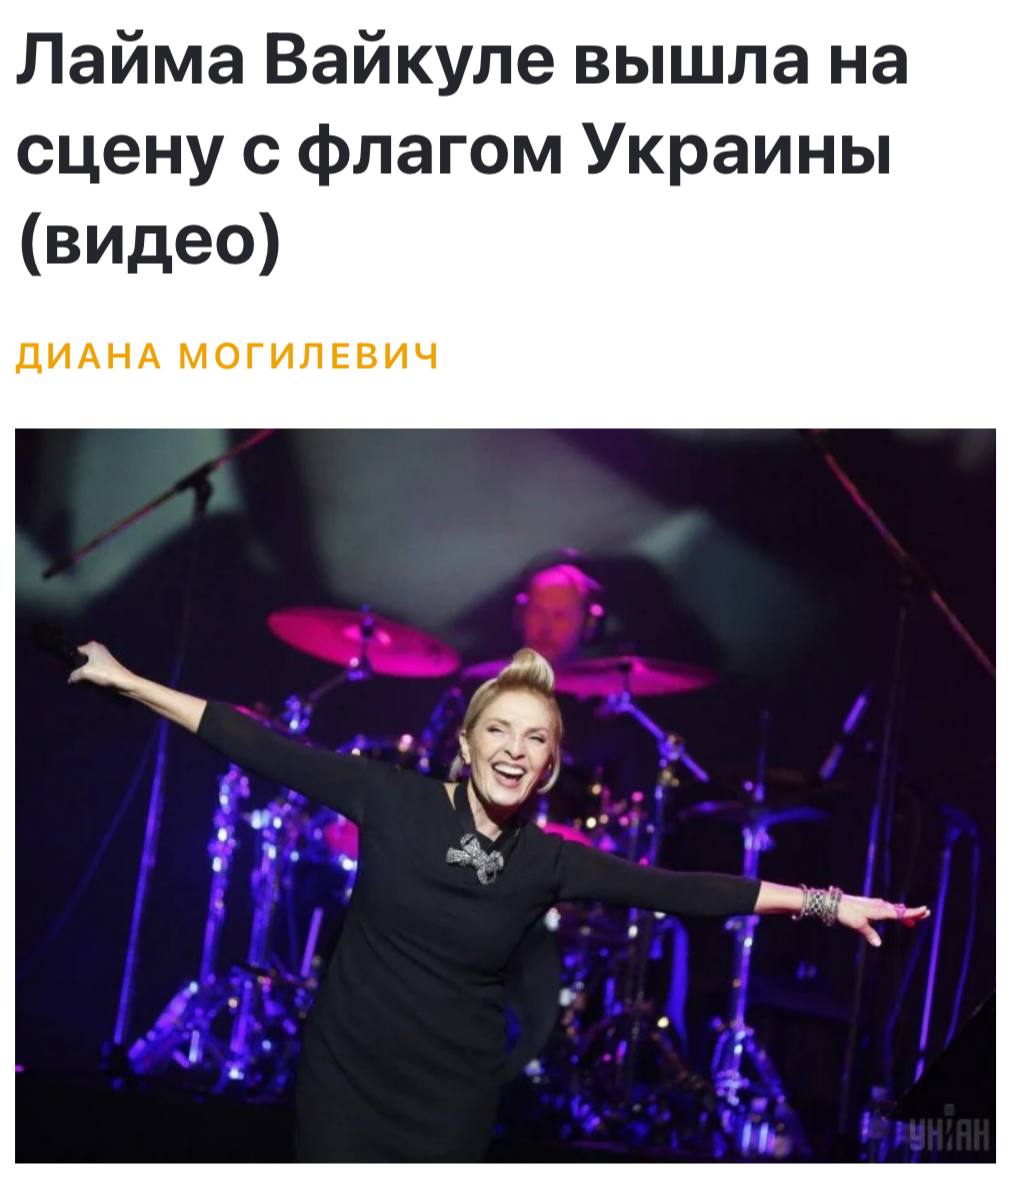 Группа сети прошу. Видео с концерта Вайкуле в Израиле с флагом Украины.